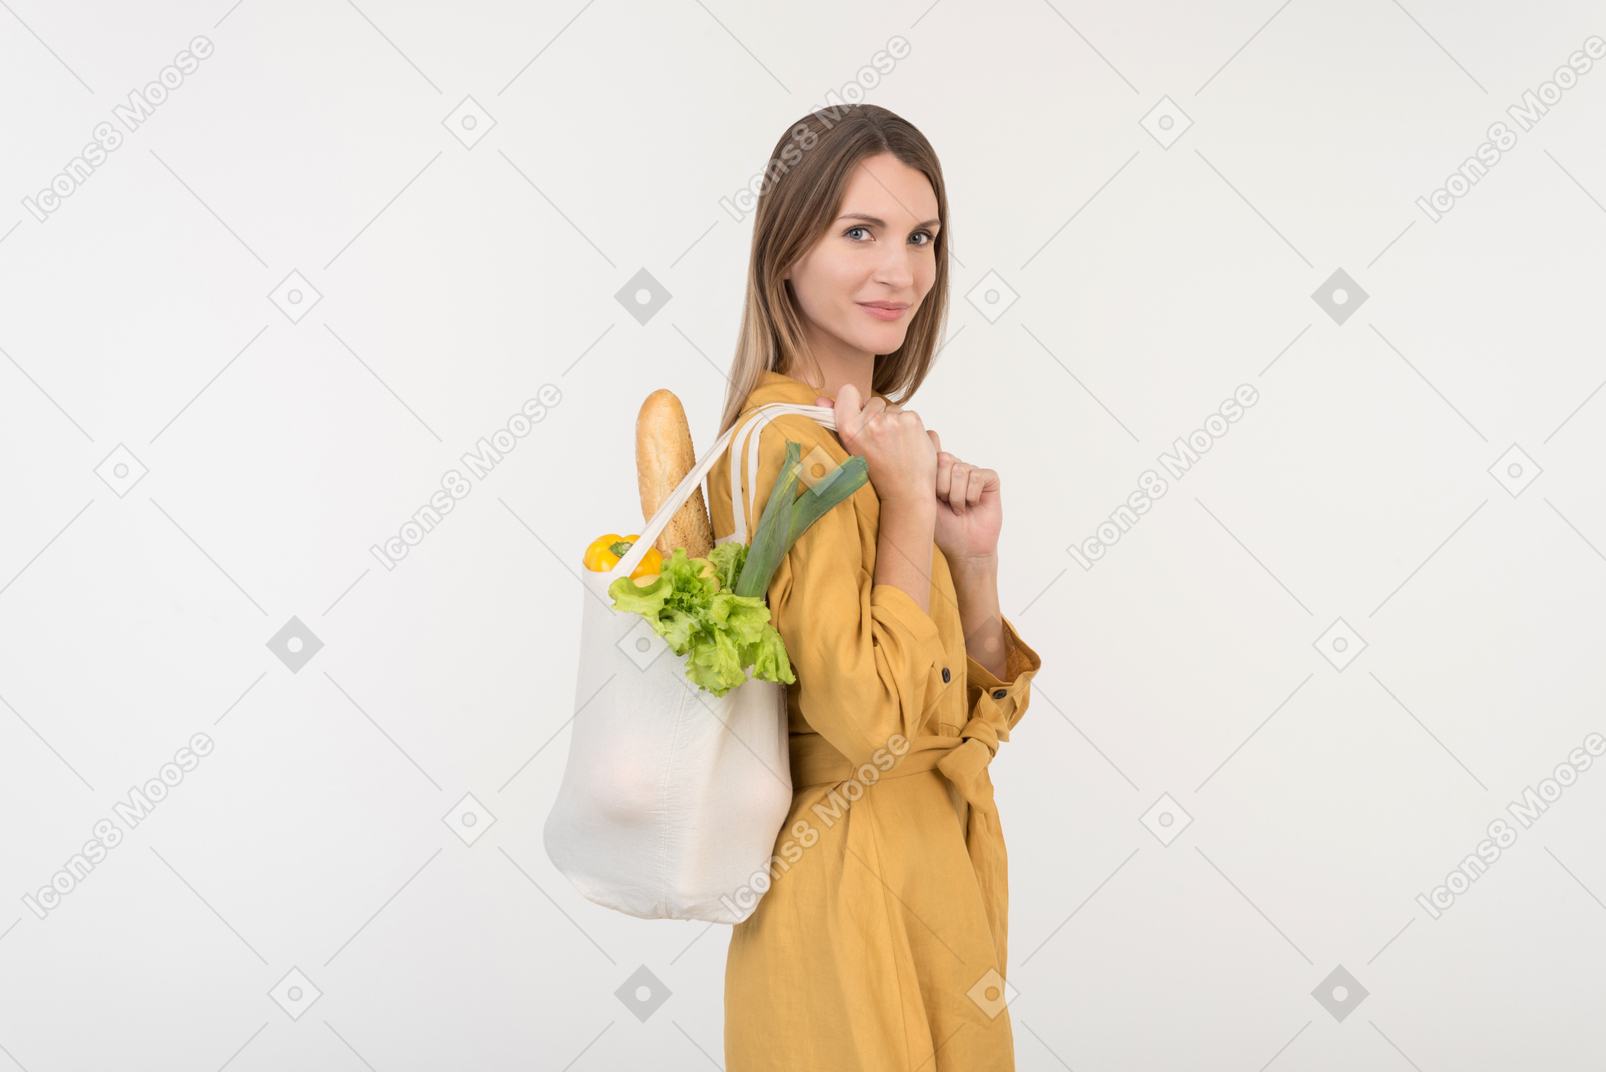 Jeune femme tenant un sac avec des légumes et regardant vers le bas